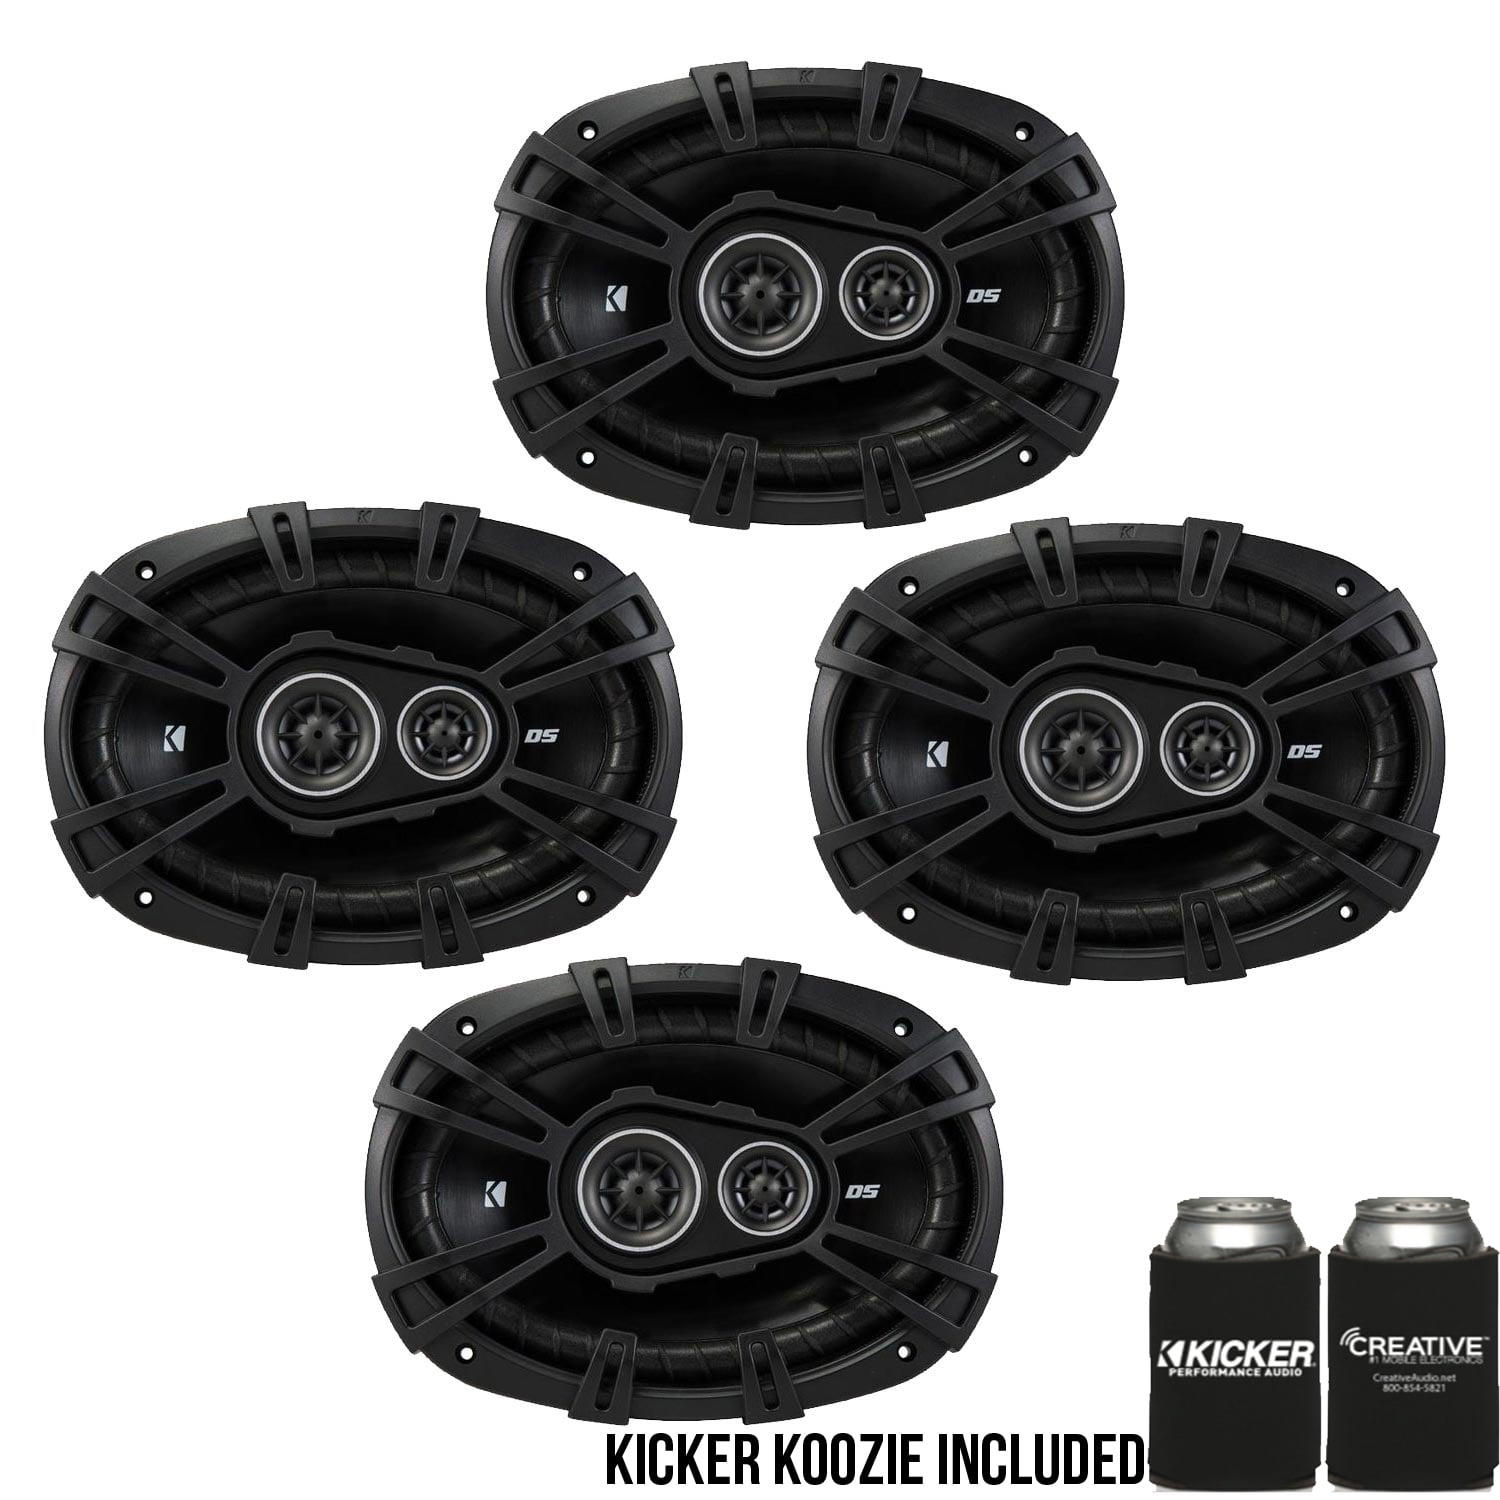 2 Kicker 43DSC69304 DSC6930 6x9 Car Speakers+2 43DSC3504 DSC350 3.5" Speakers 